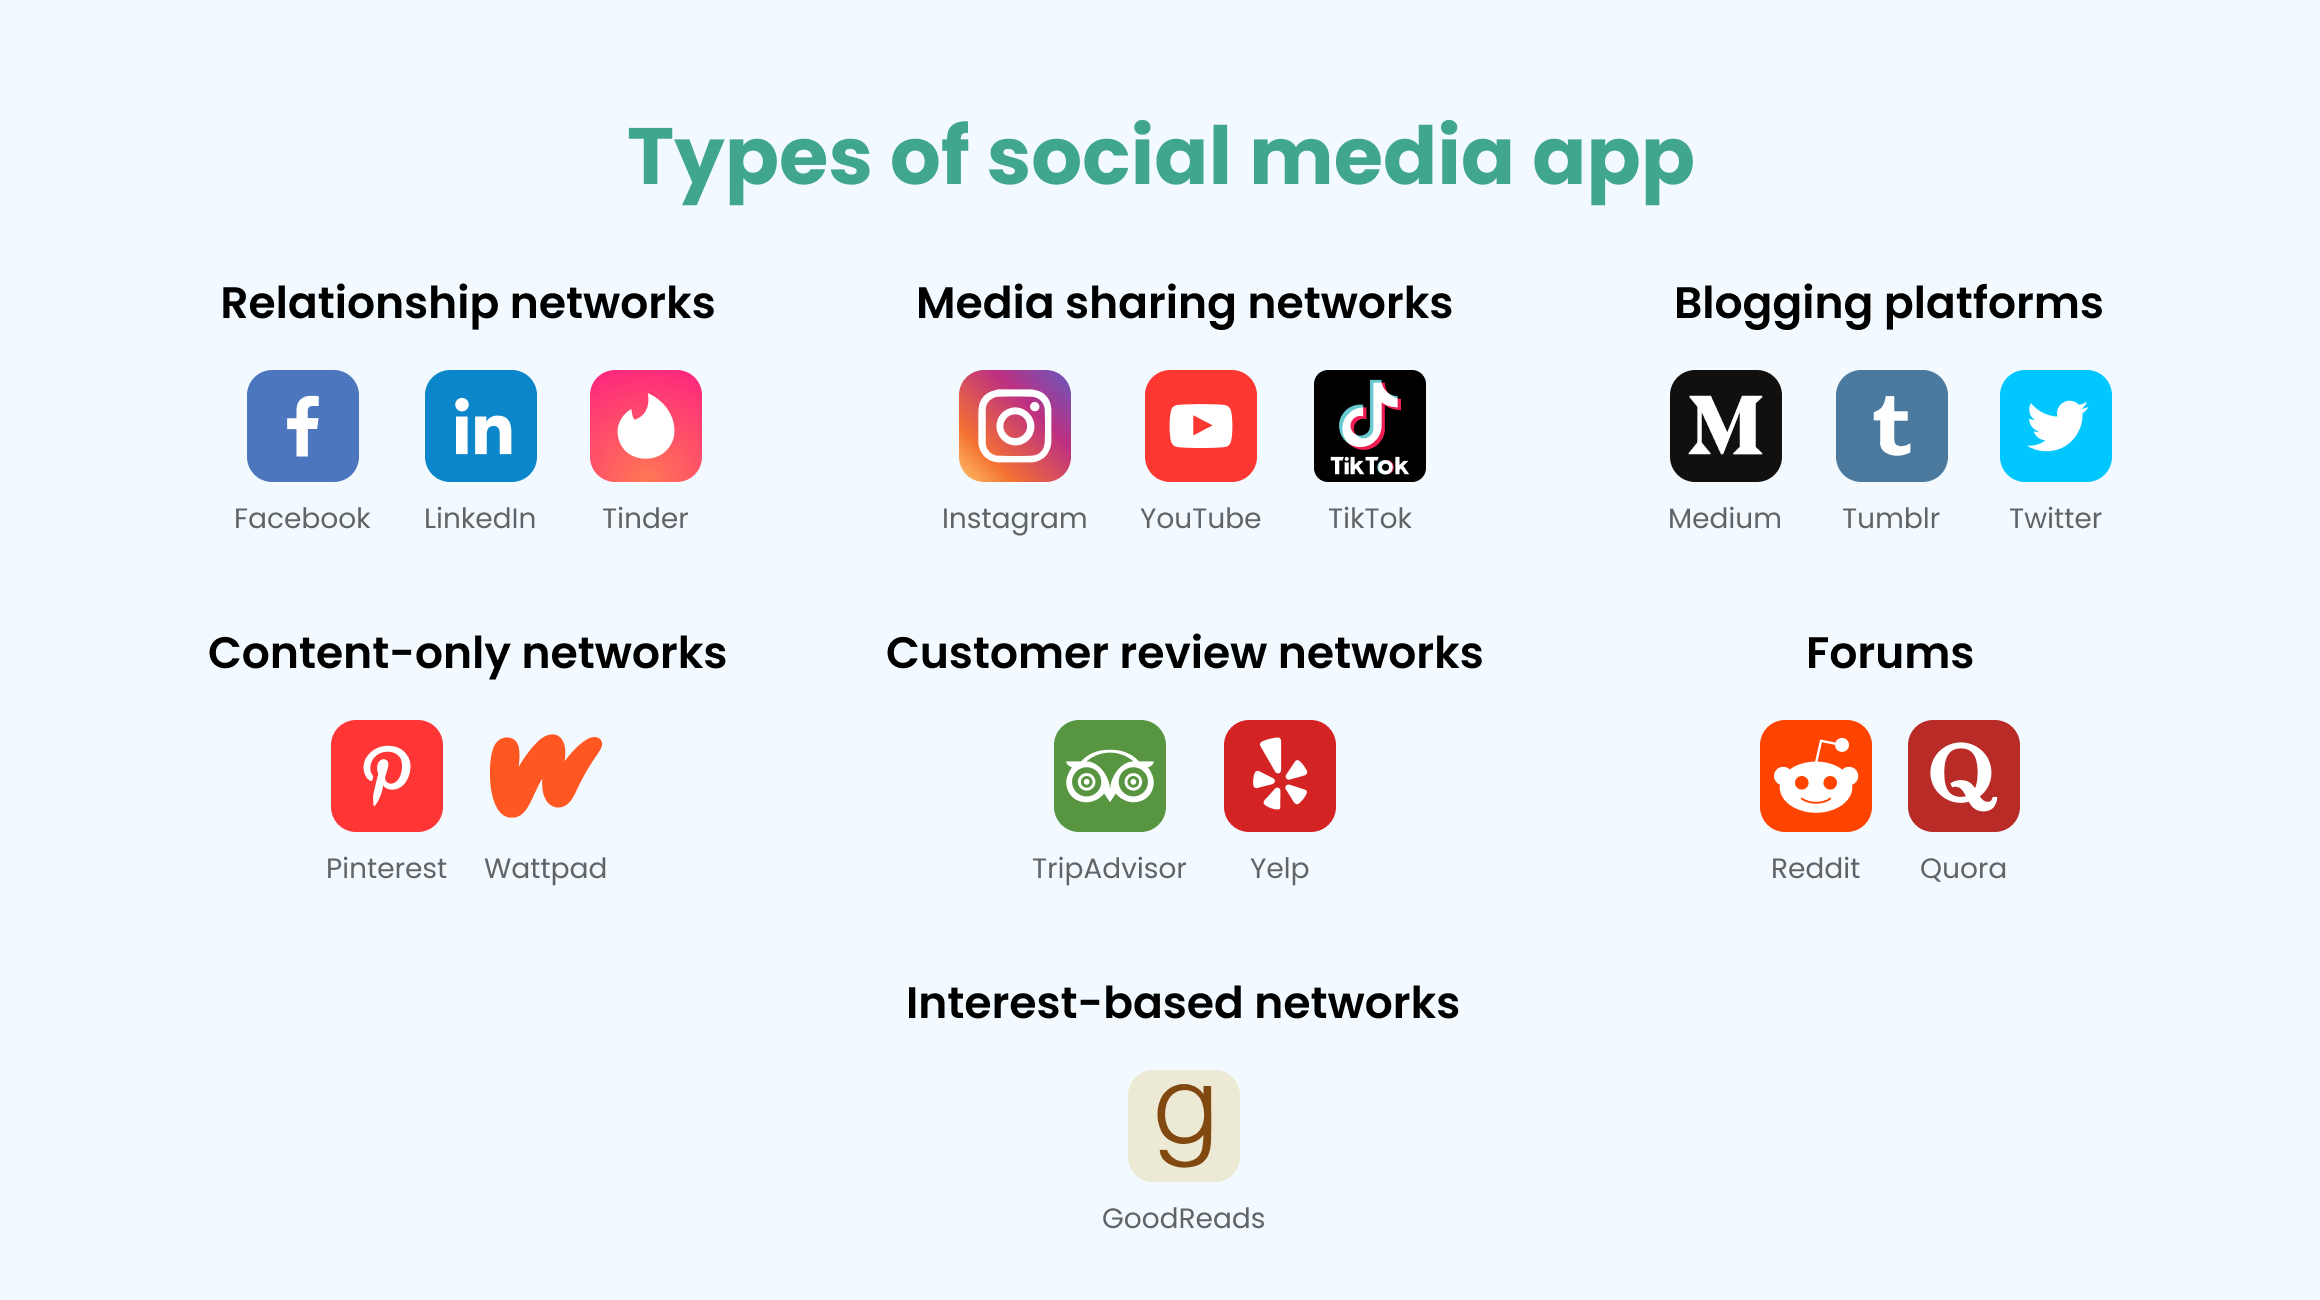 Types of social media apps